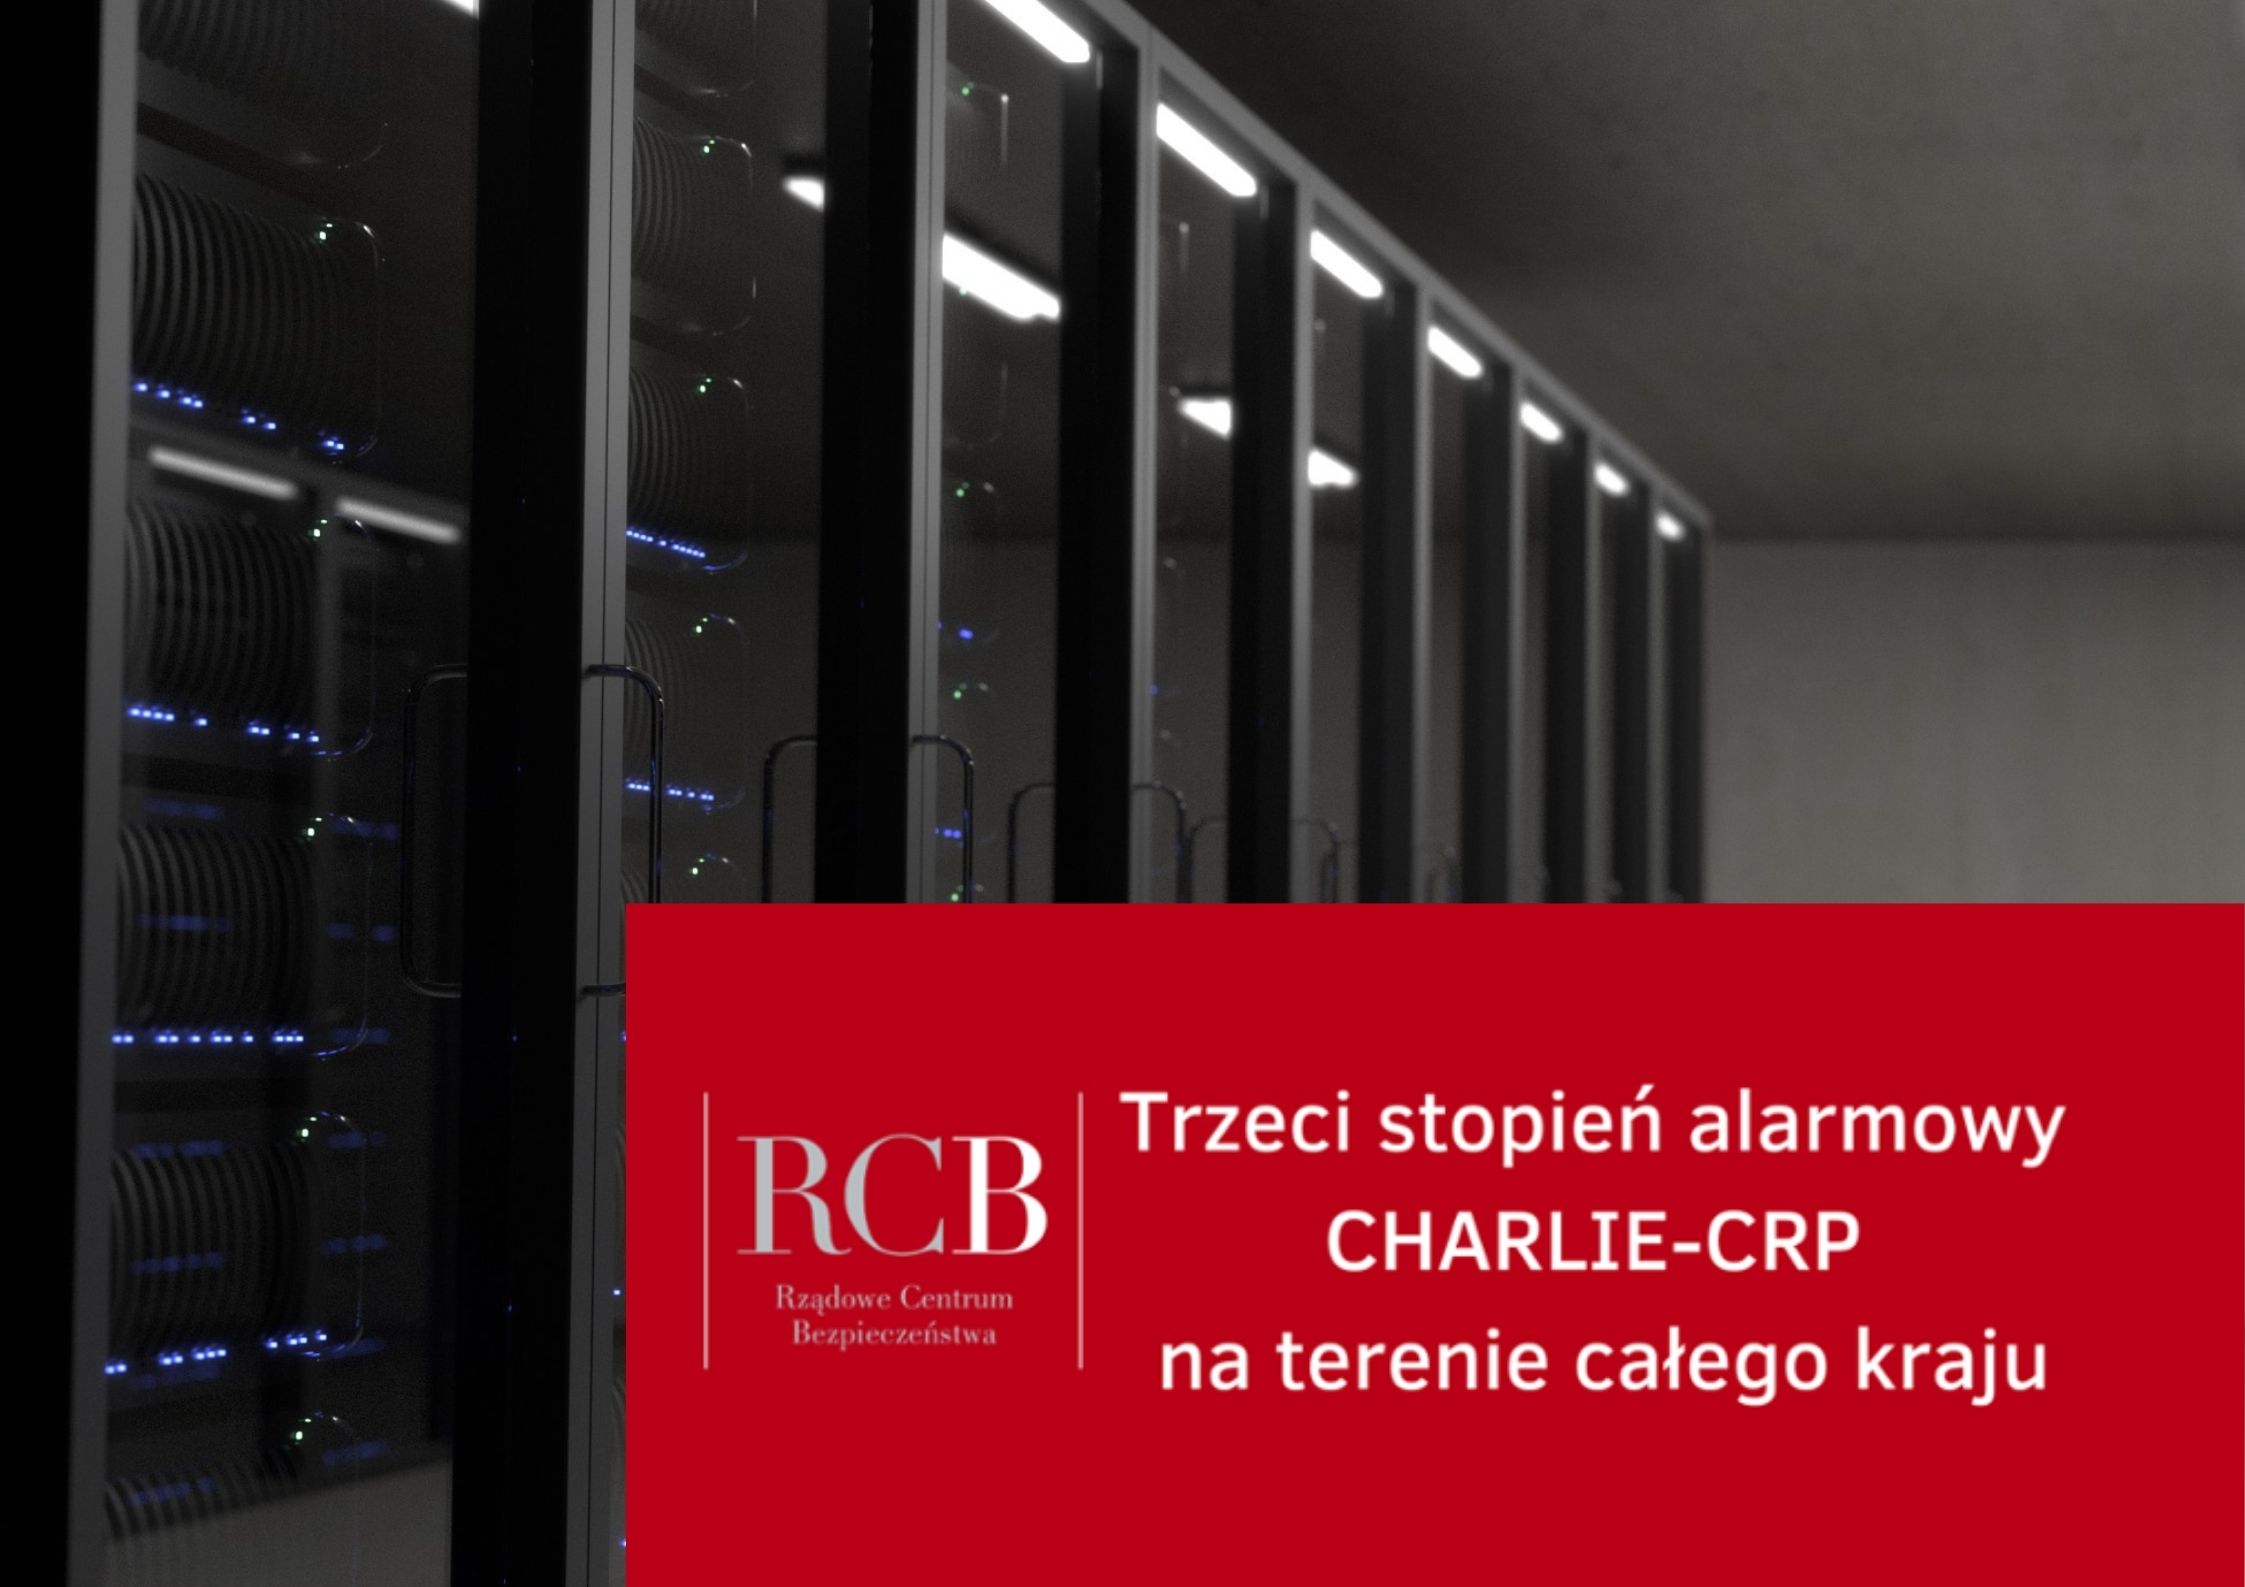 Stopień alarmowy CHARLIE-CRP wprowadzony w całej Polsce